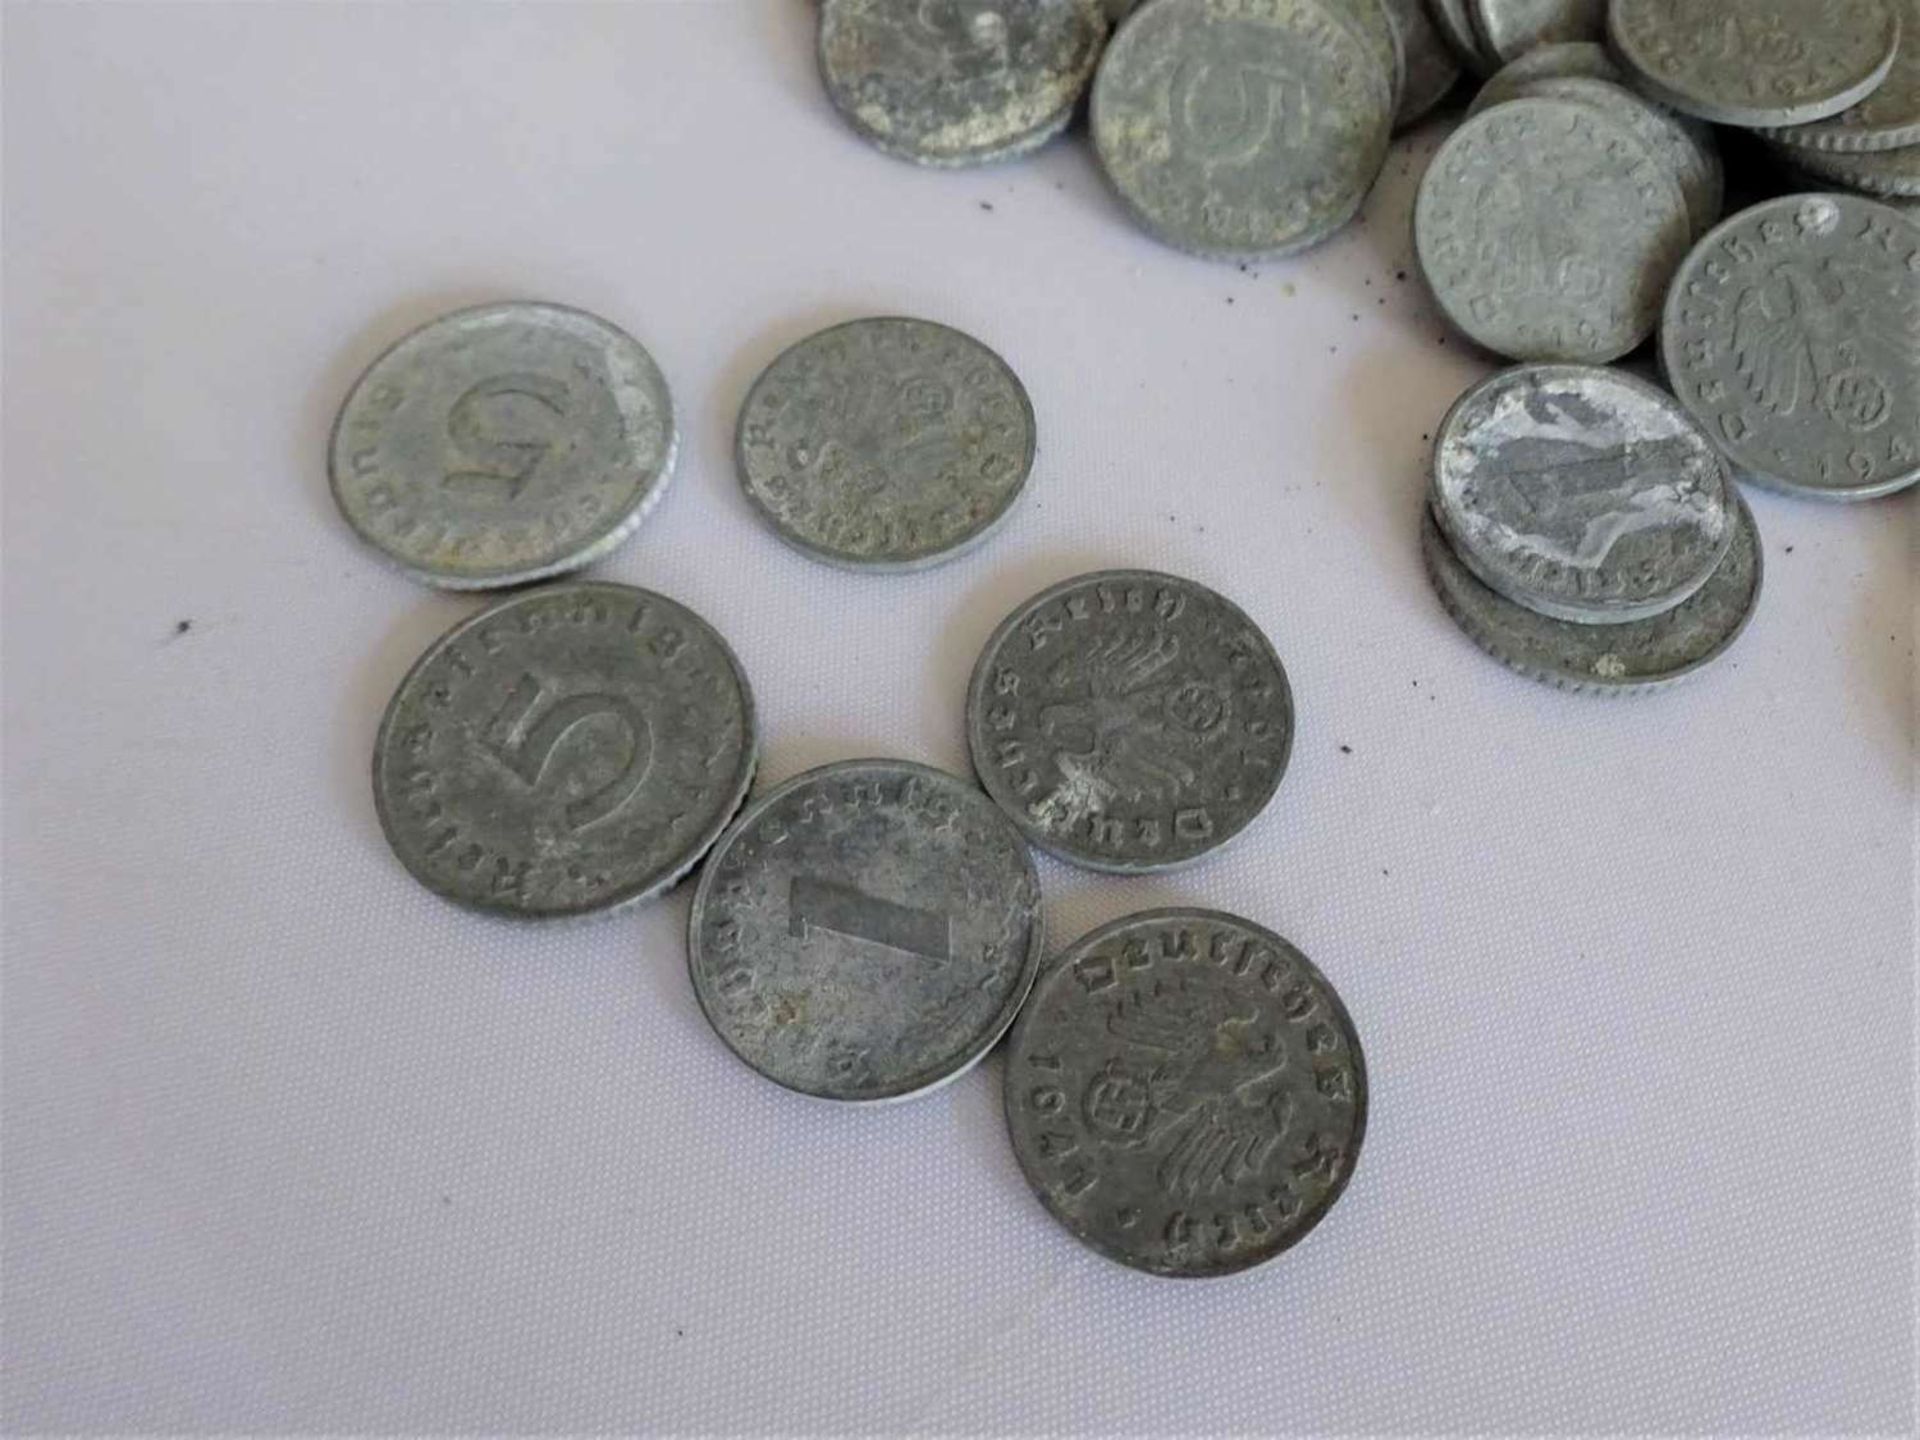 Lot Münzen, Deutsches Reich, bestehend aus 1 und 5 Pfennig Münzen, Zinn, verschiedene Jahrgänge, - Bild 2 aus 2